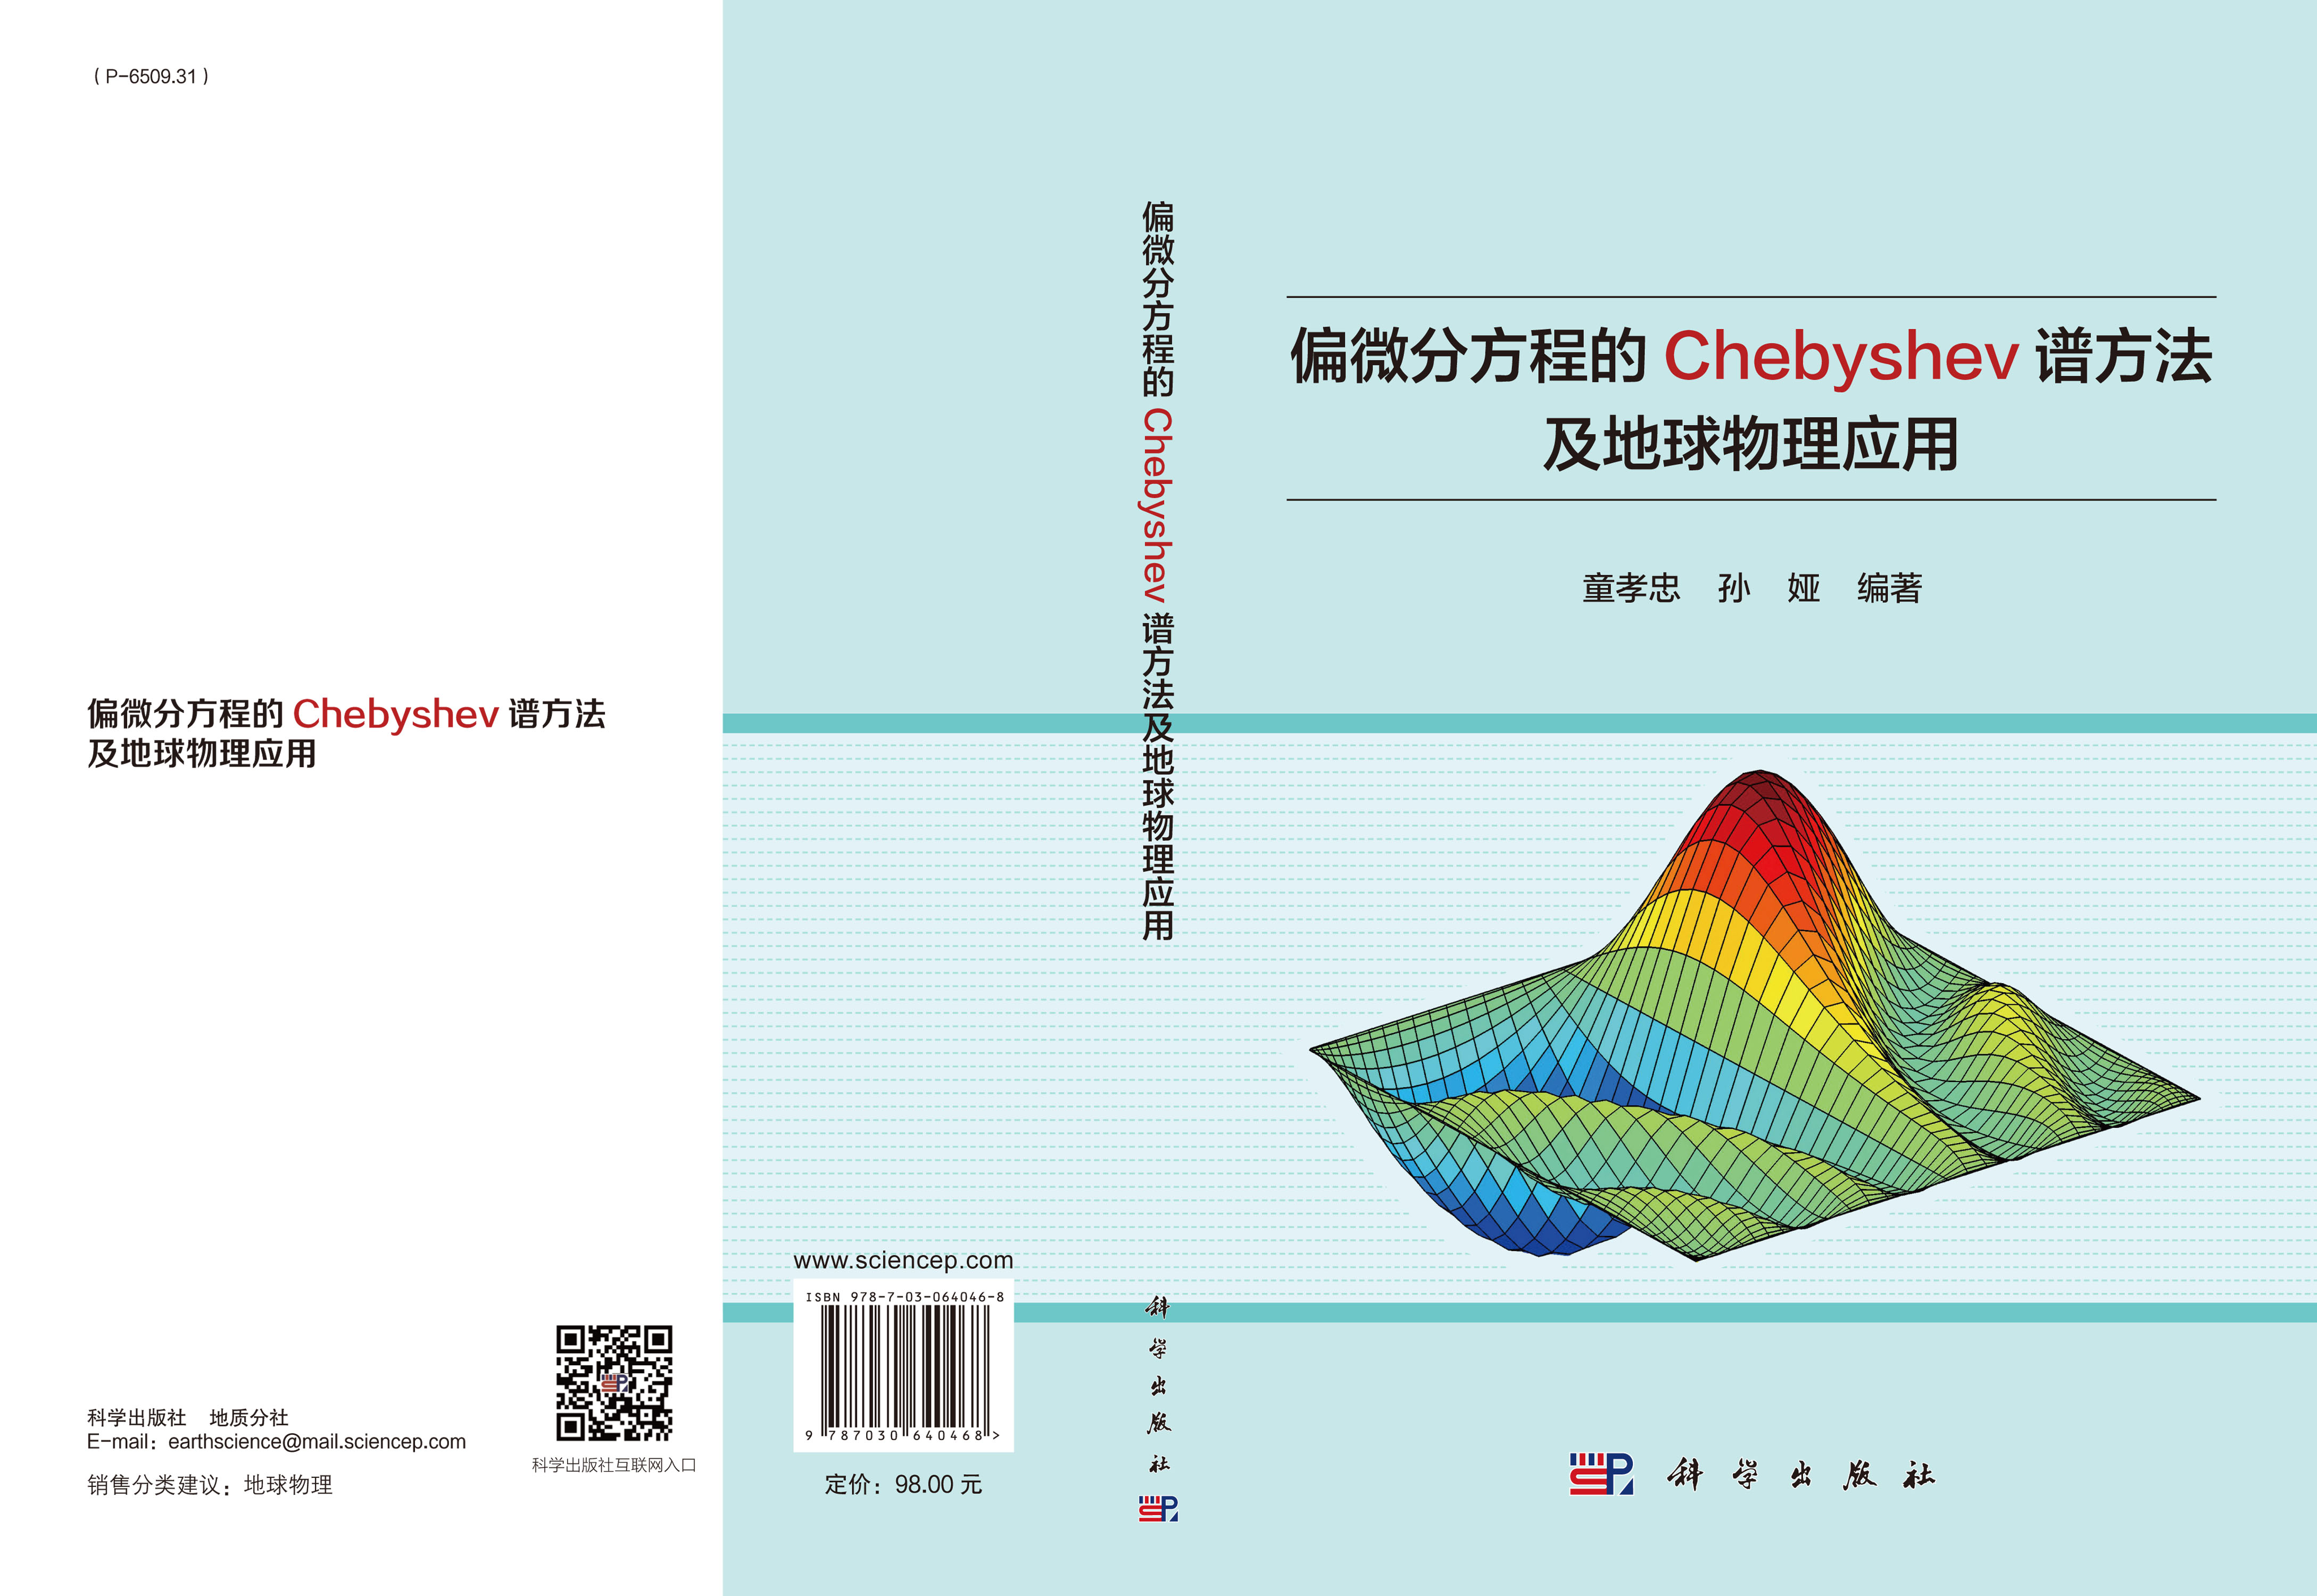 偏微分方程的Chebyshev谱方法及地球物理应用